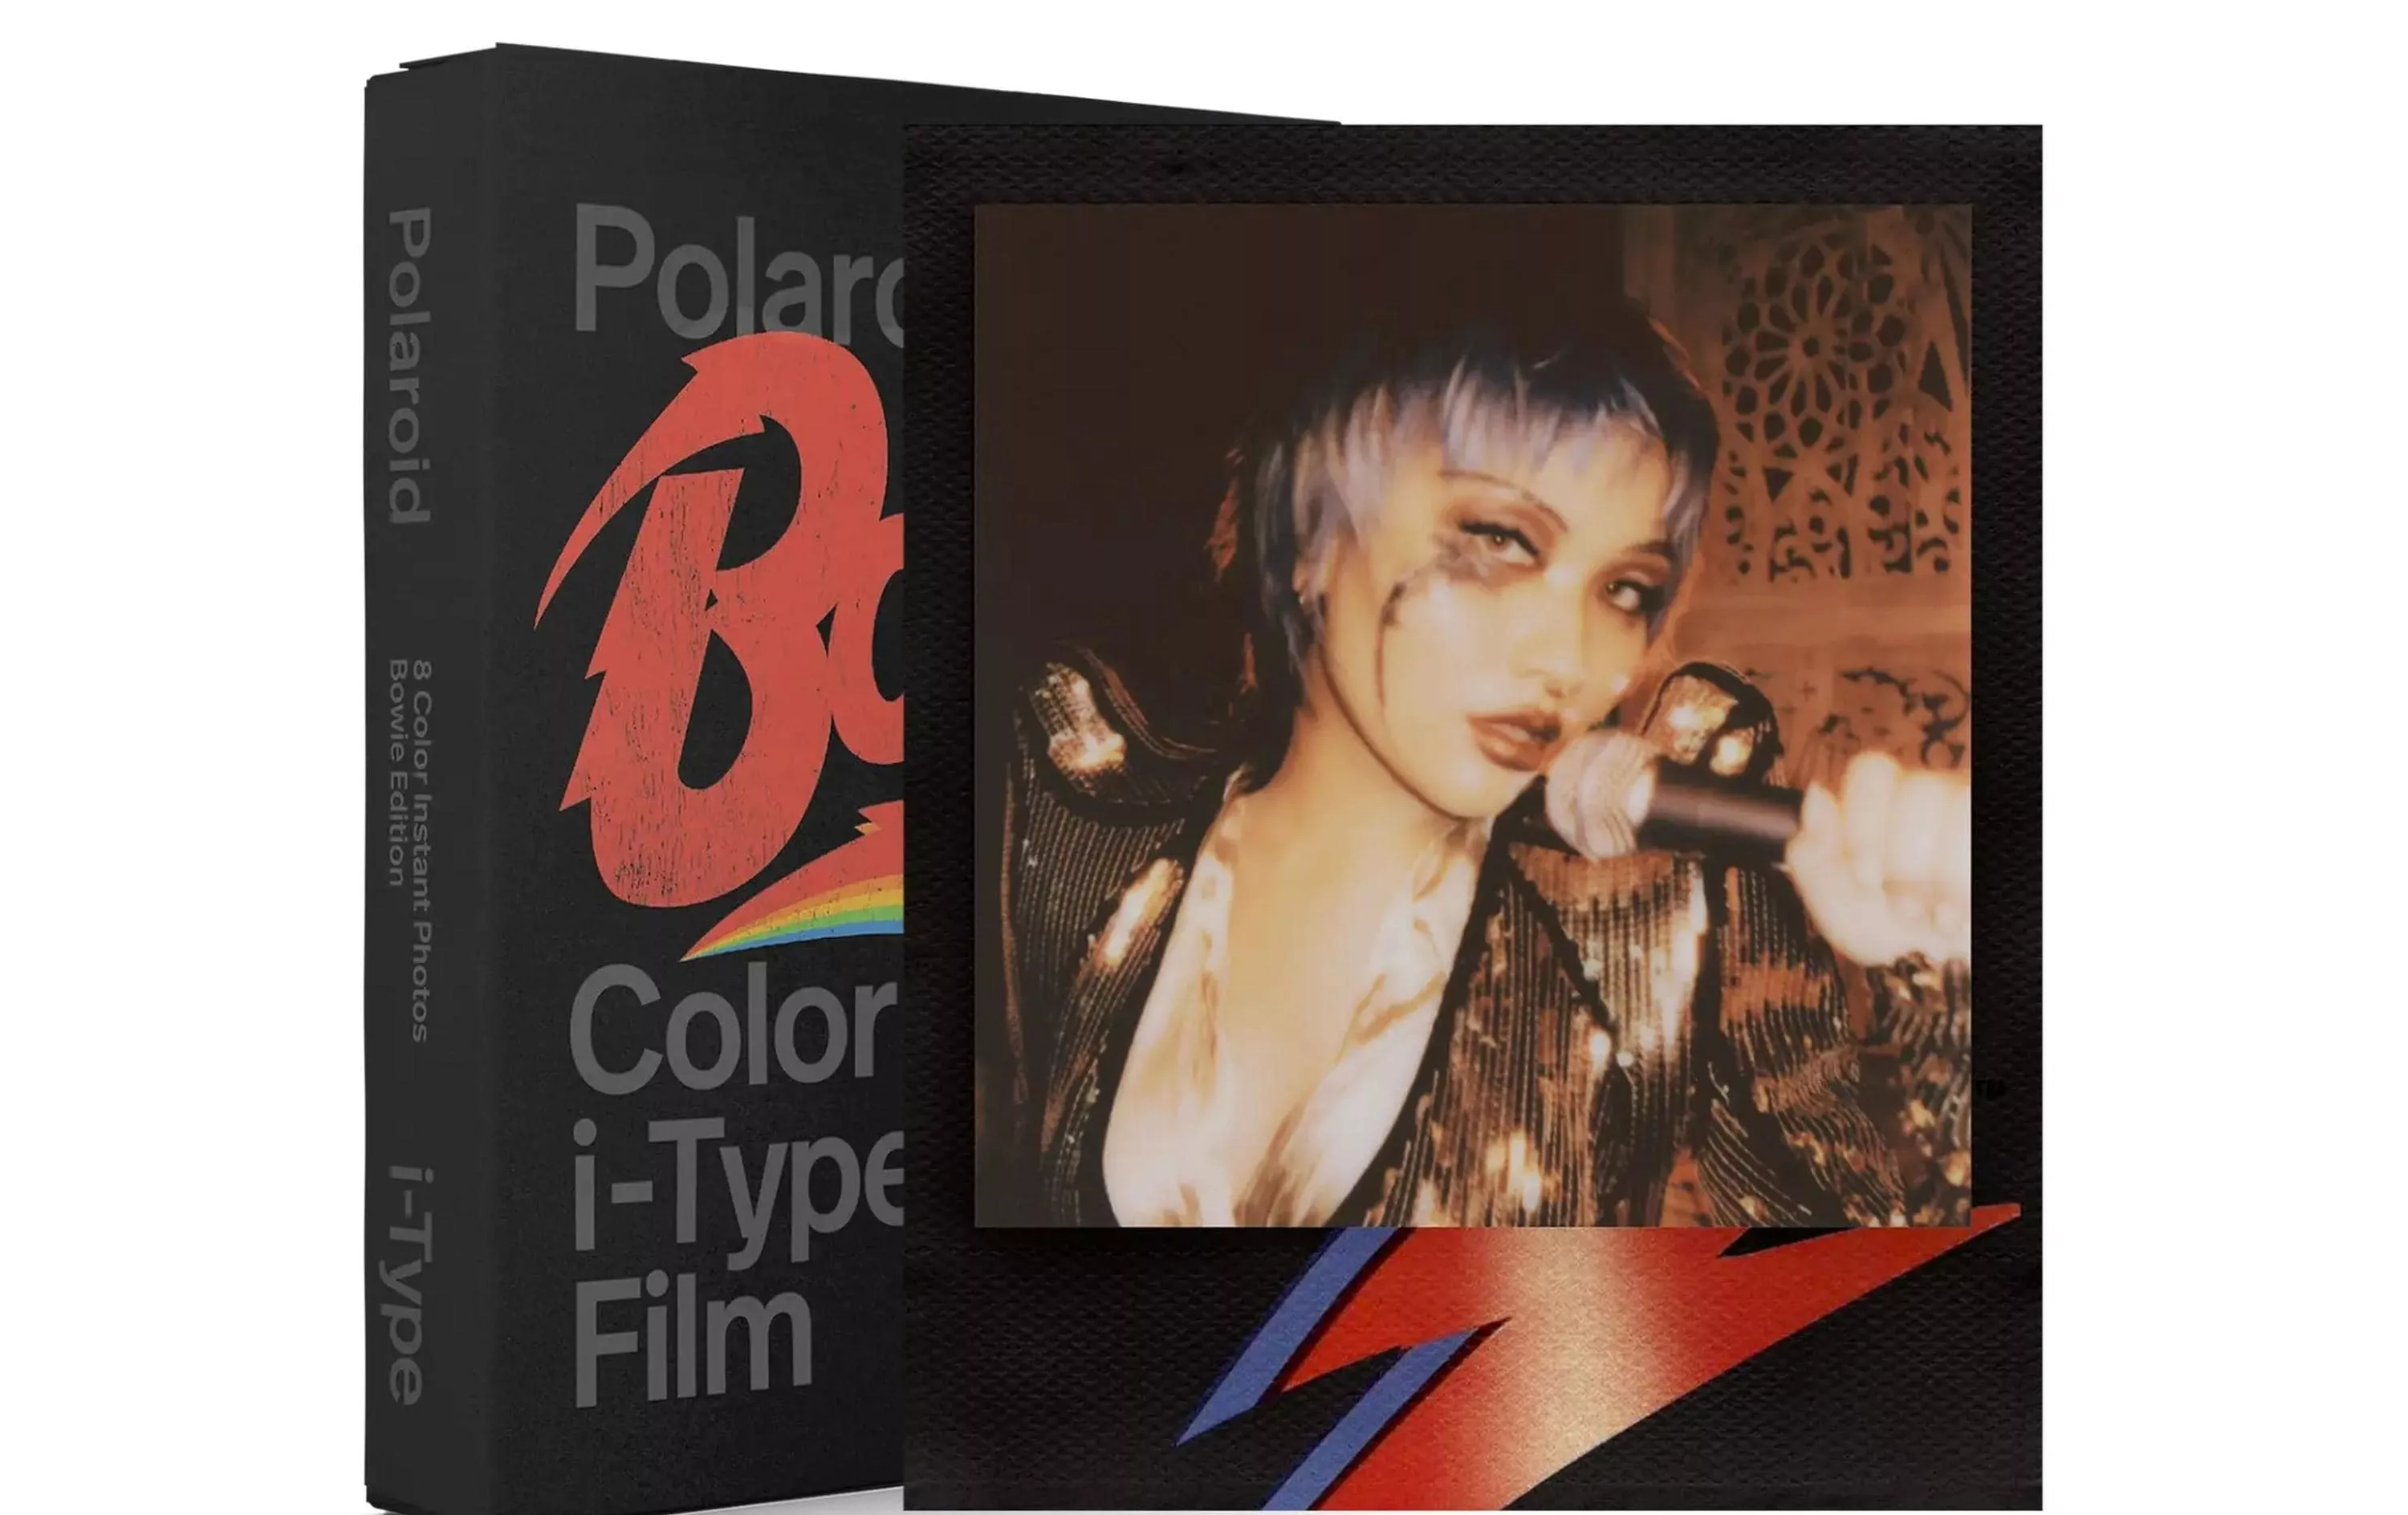 Pellicola istantanea Polaroid a colori i-Type - Edizione David Bowie